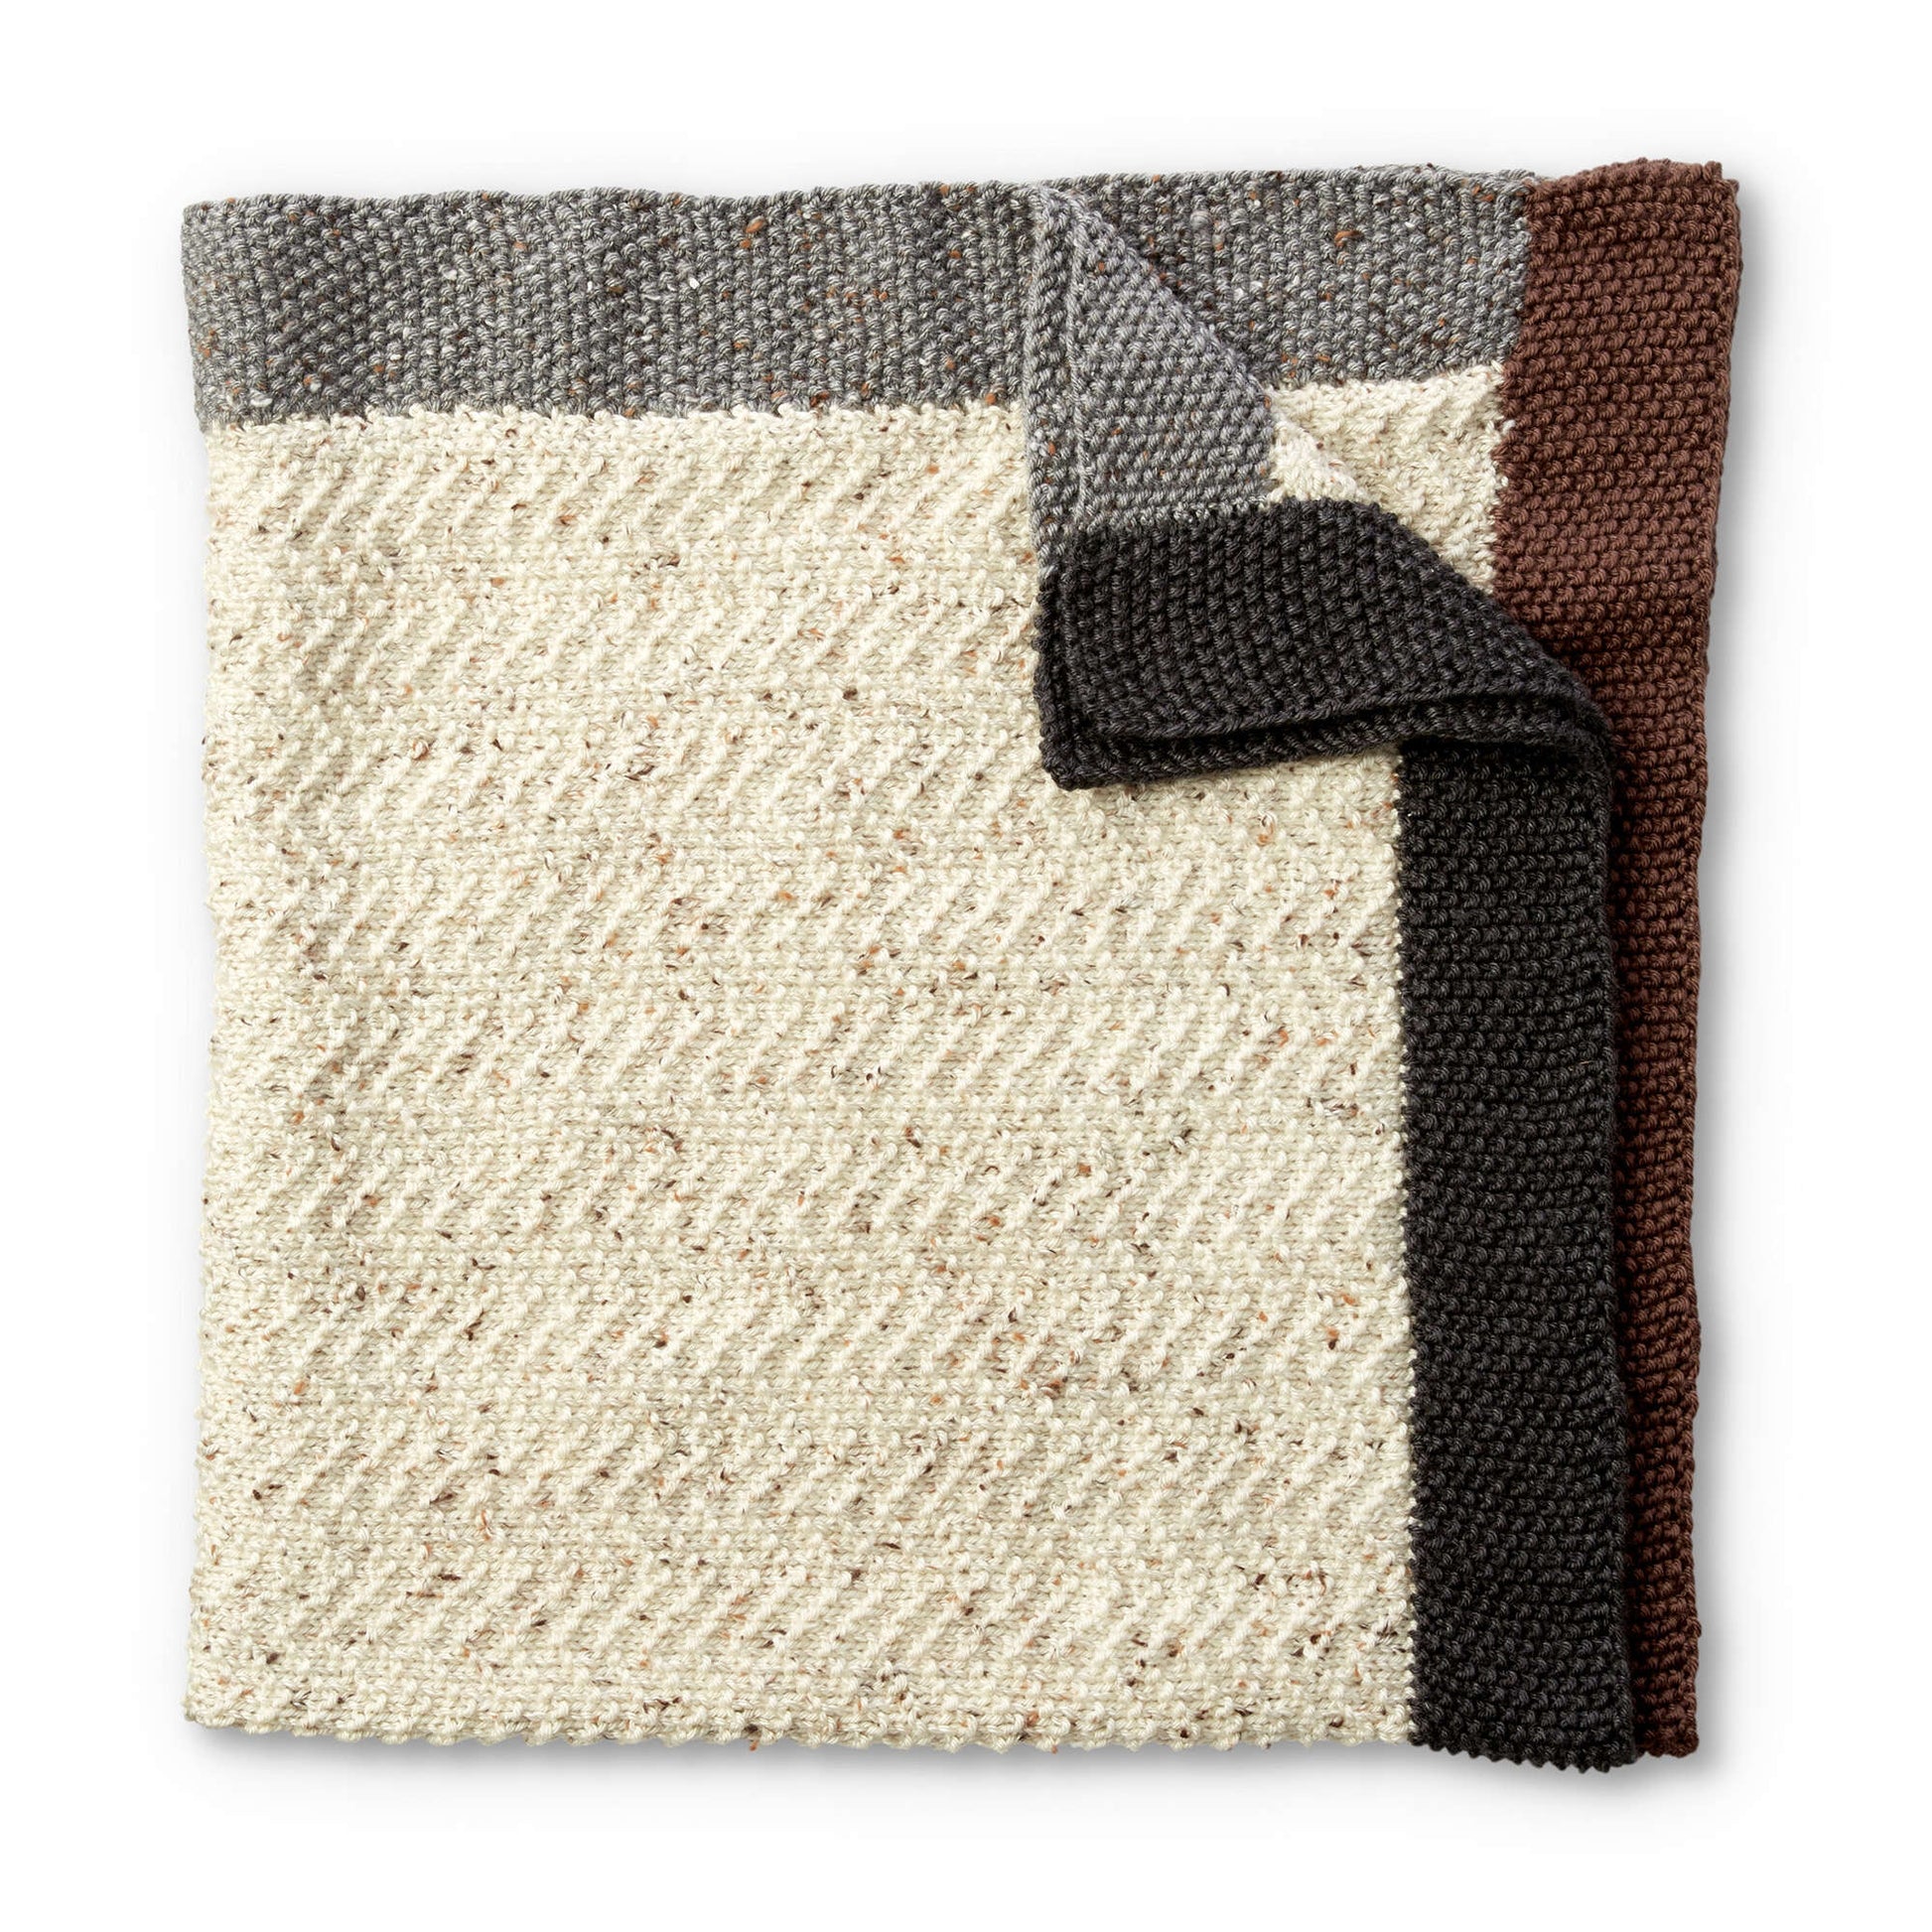 Free Caron Brick Road Knit Baby Blanket Pattern